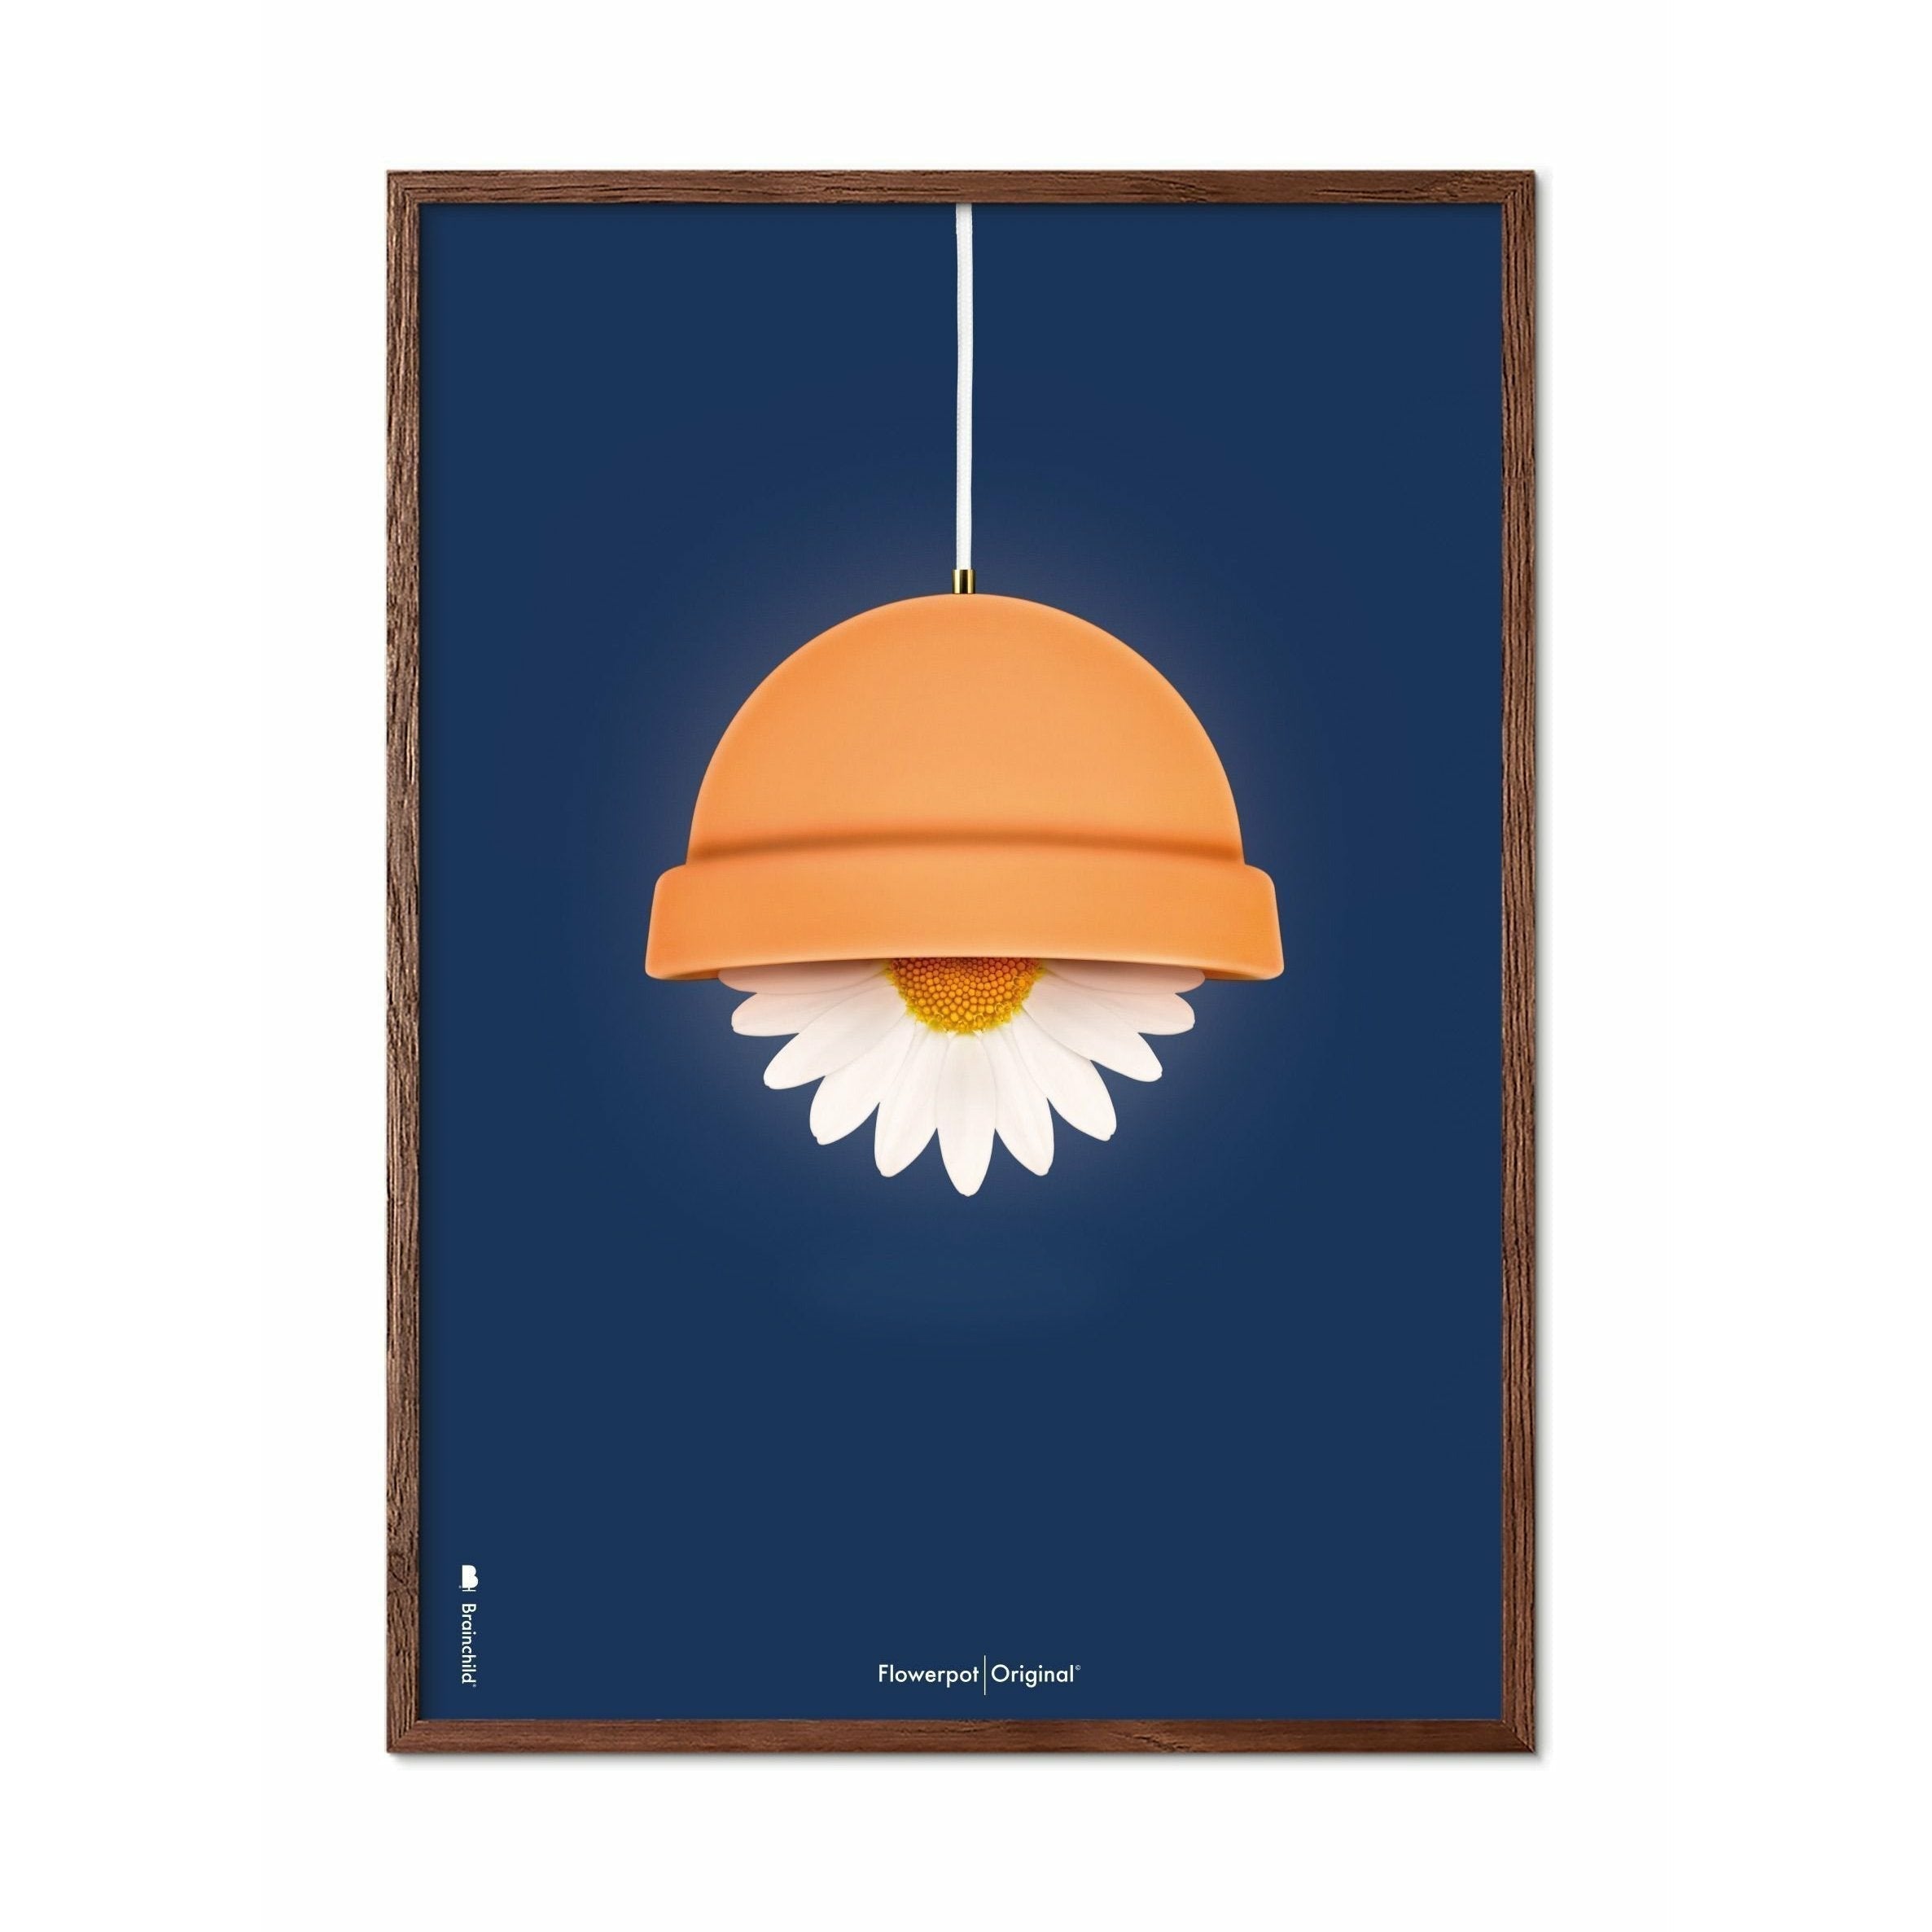 Brainchild Blumentopf Classic Poster, dunkler Holzrahmen 50x70 cm, dunkelblauer Hintergrund